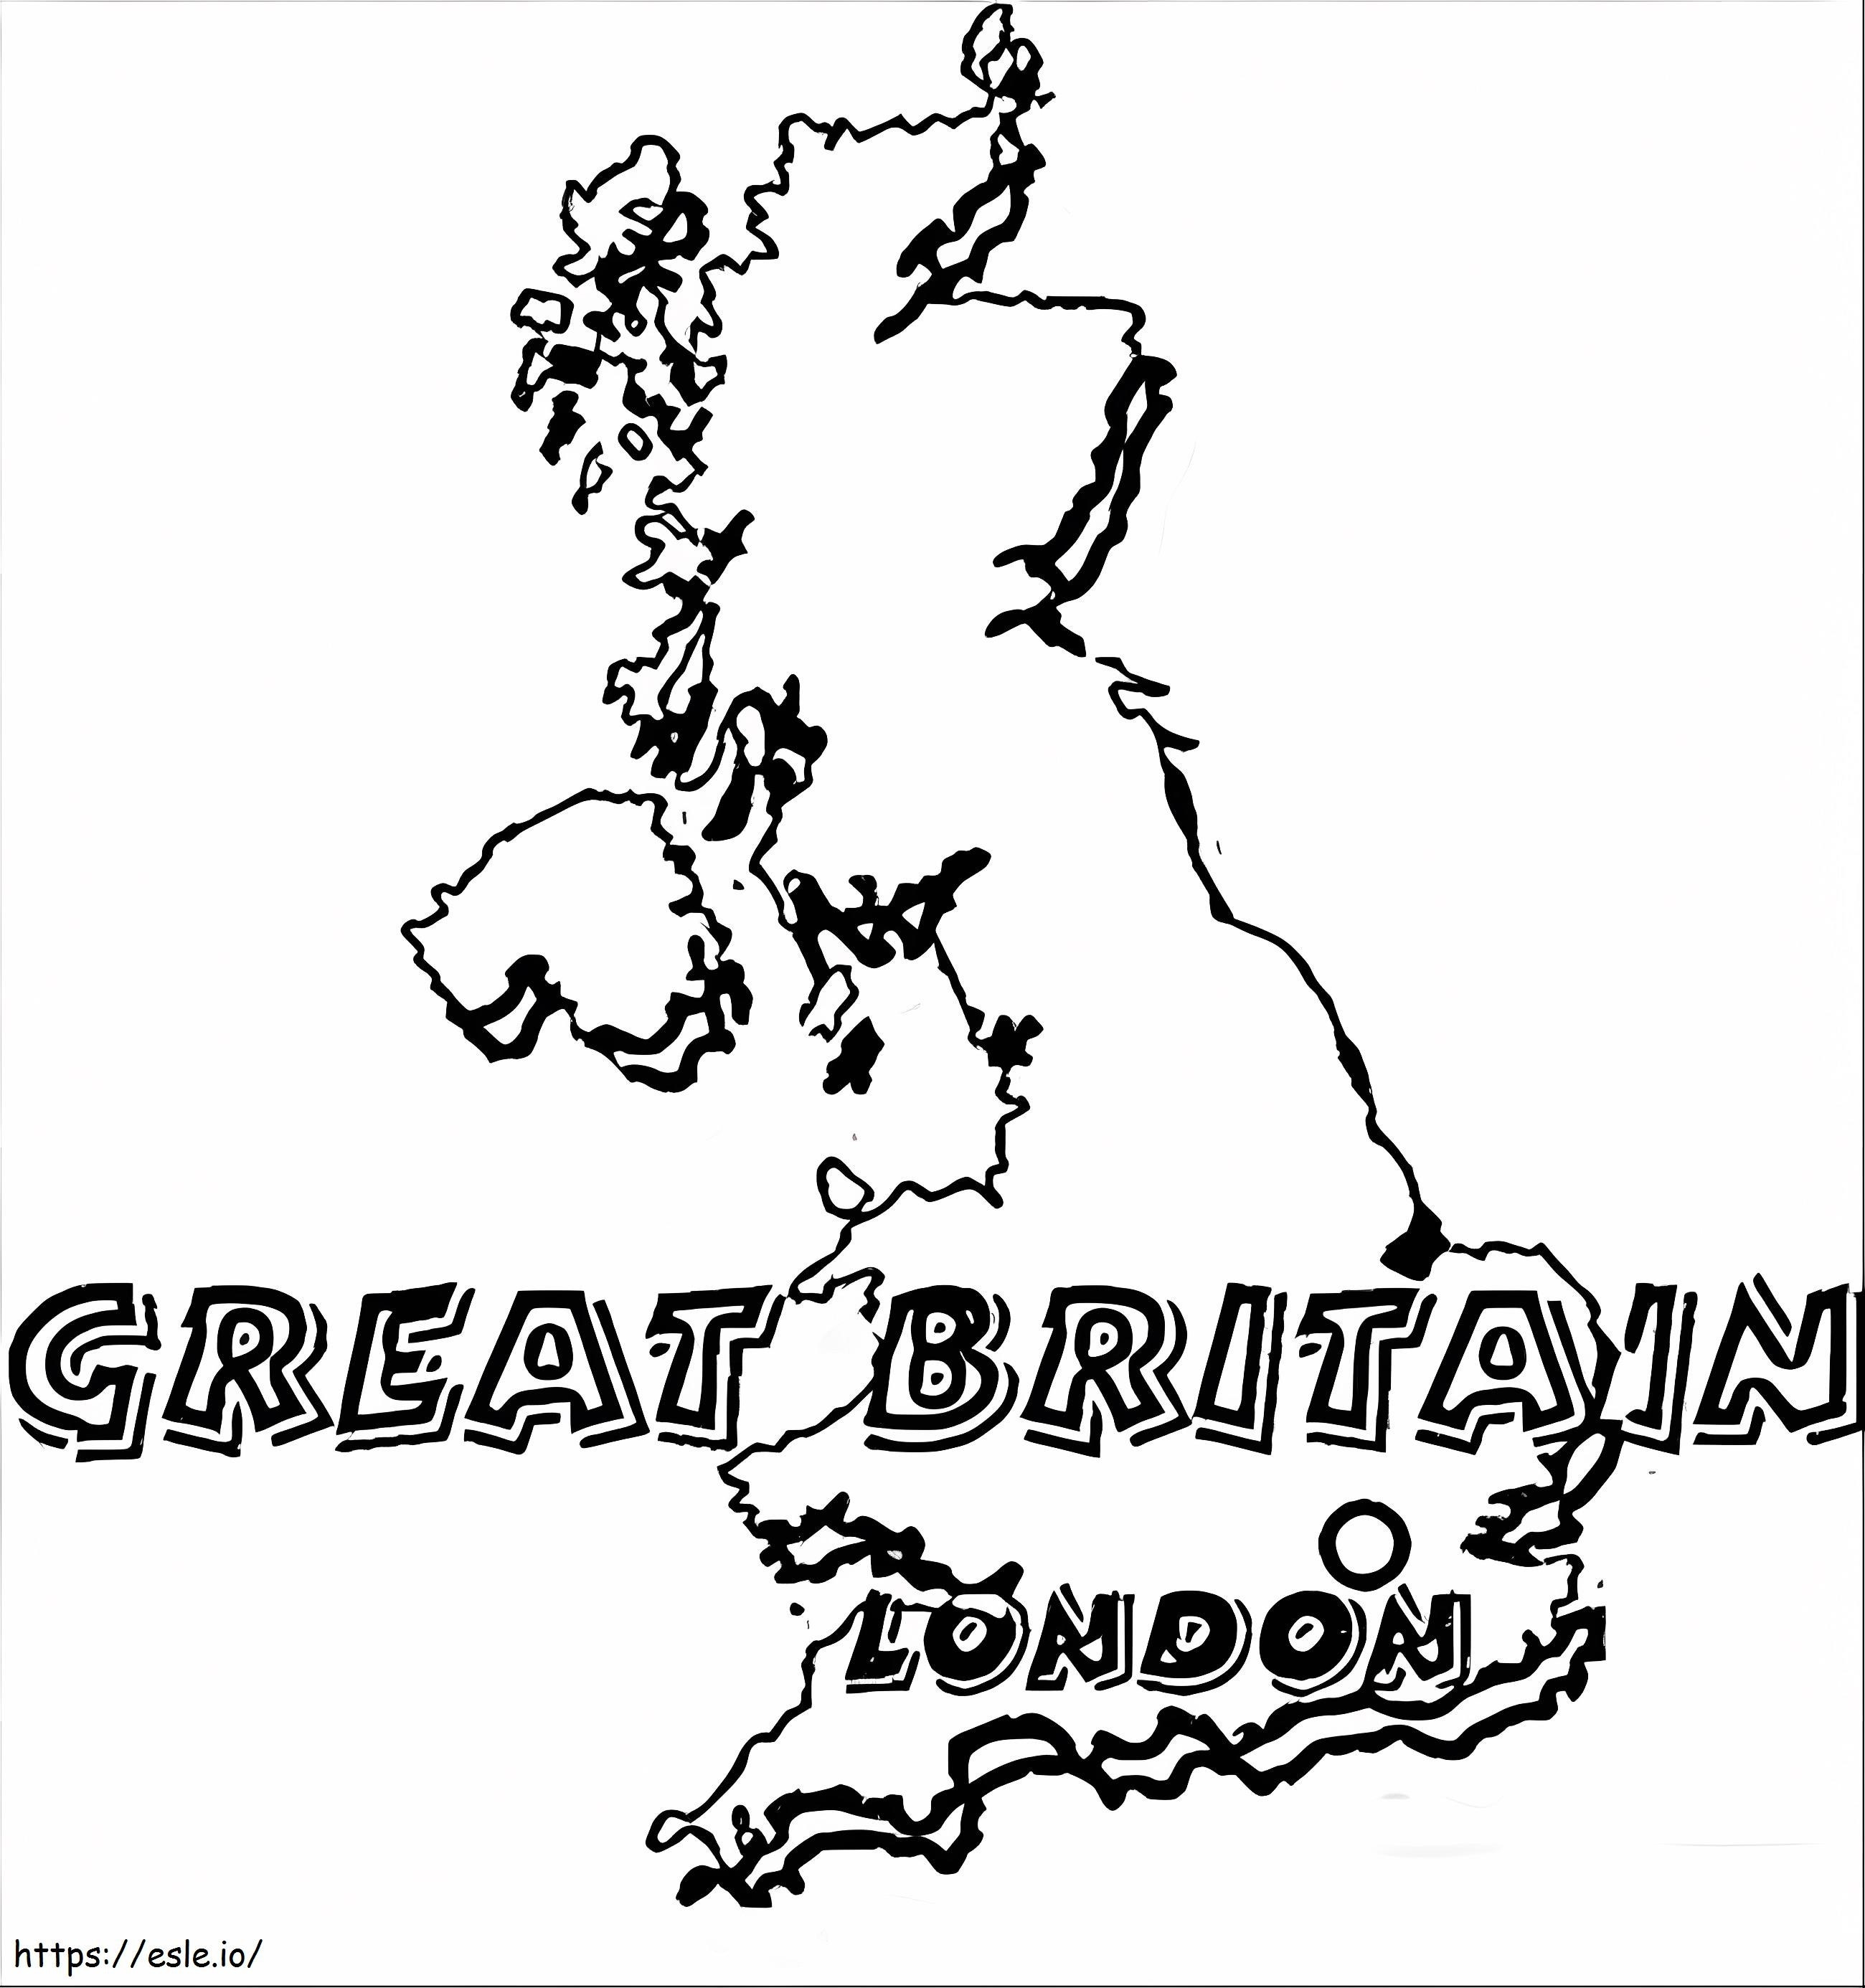 Karte des Vereinigten Königreichs ausmalbilder